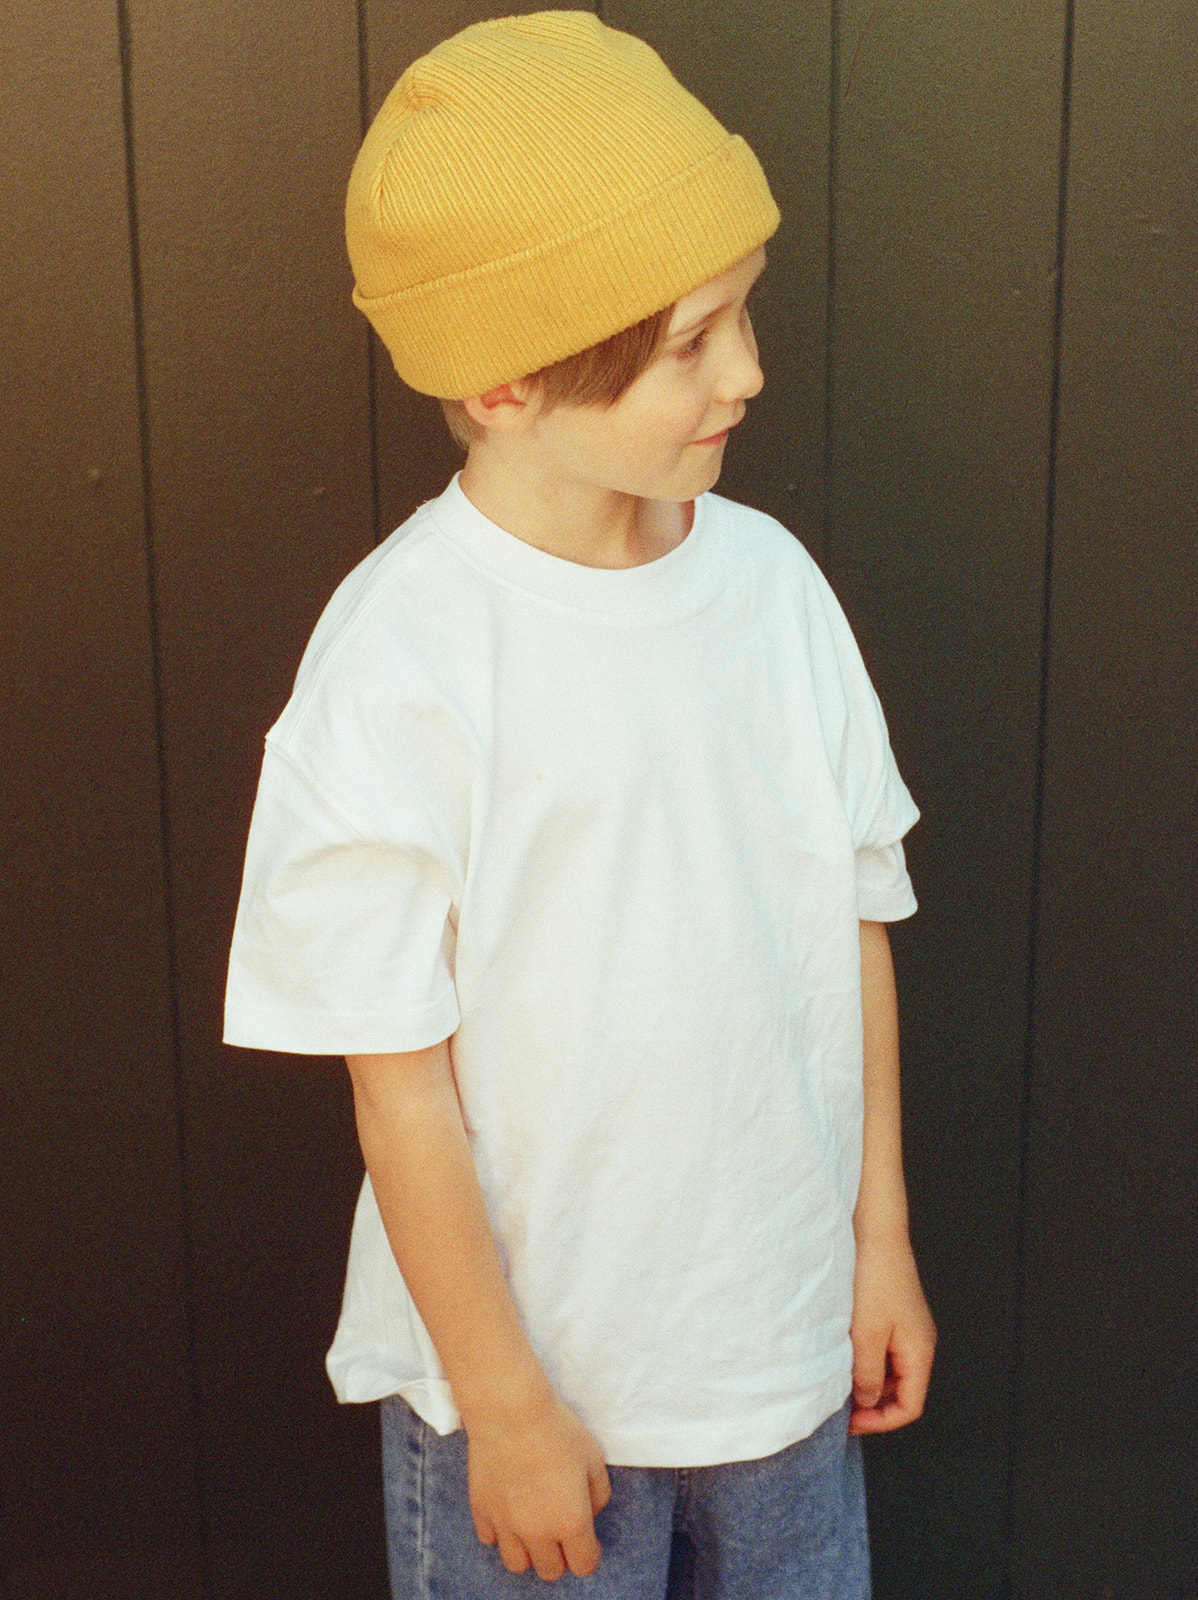 Film portrait of little boy in yellow beanie